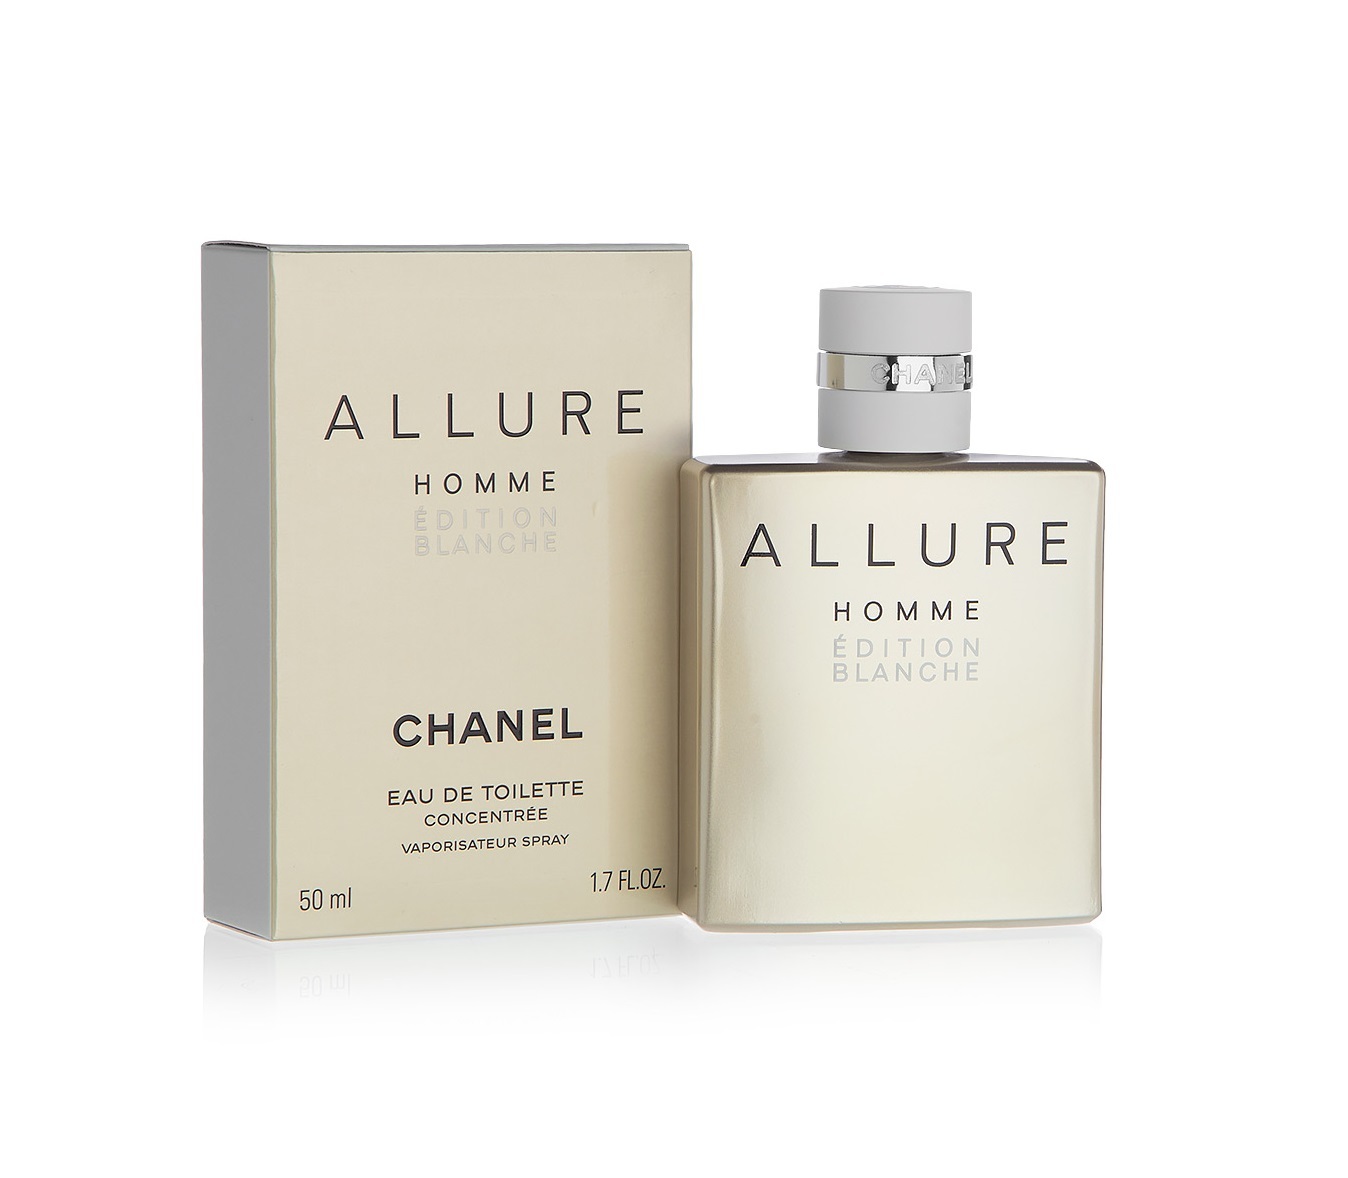 Chanel Allure homme Edition Blanche EDP 100ml. Chanel Allure 100ml (m). Парфюмерная вода мужская Chanel Allure homme Edition Blanche. Мужская туалетная вода Шанель Аллюр. Allure homme отзывы